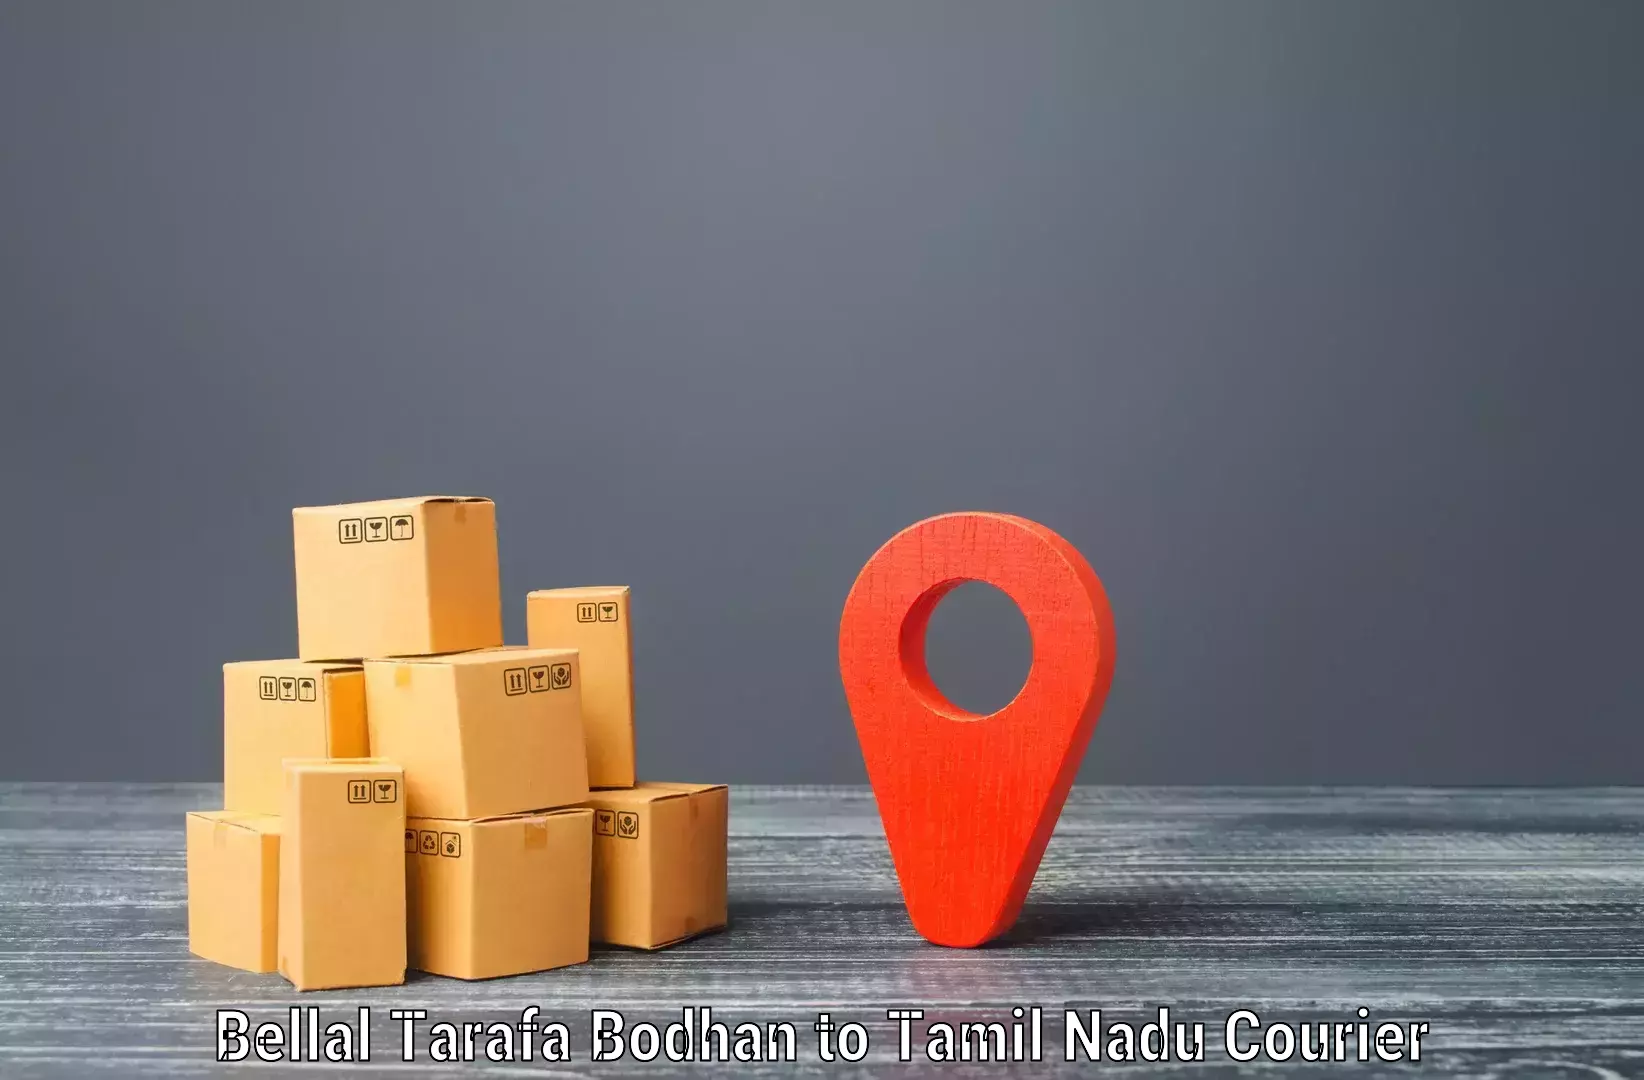 Bulk courier orders Bellal Tarafa Bodhan to Padi